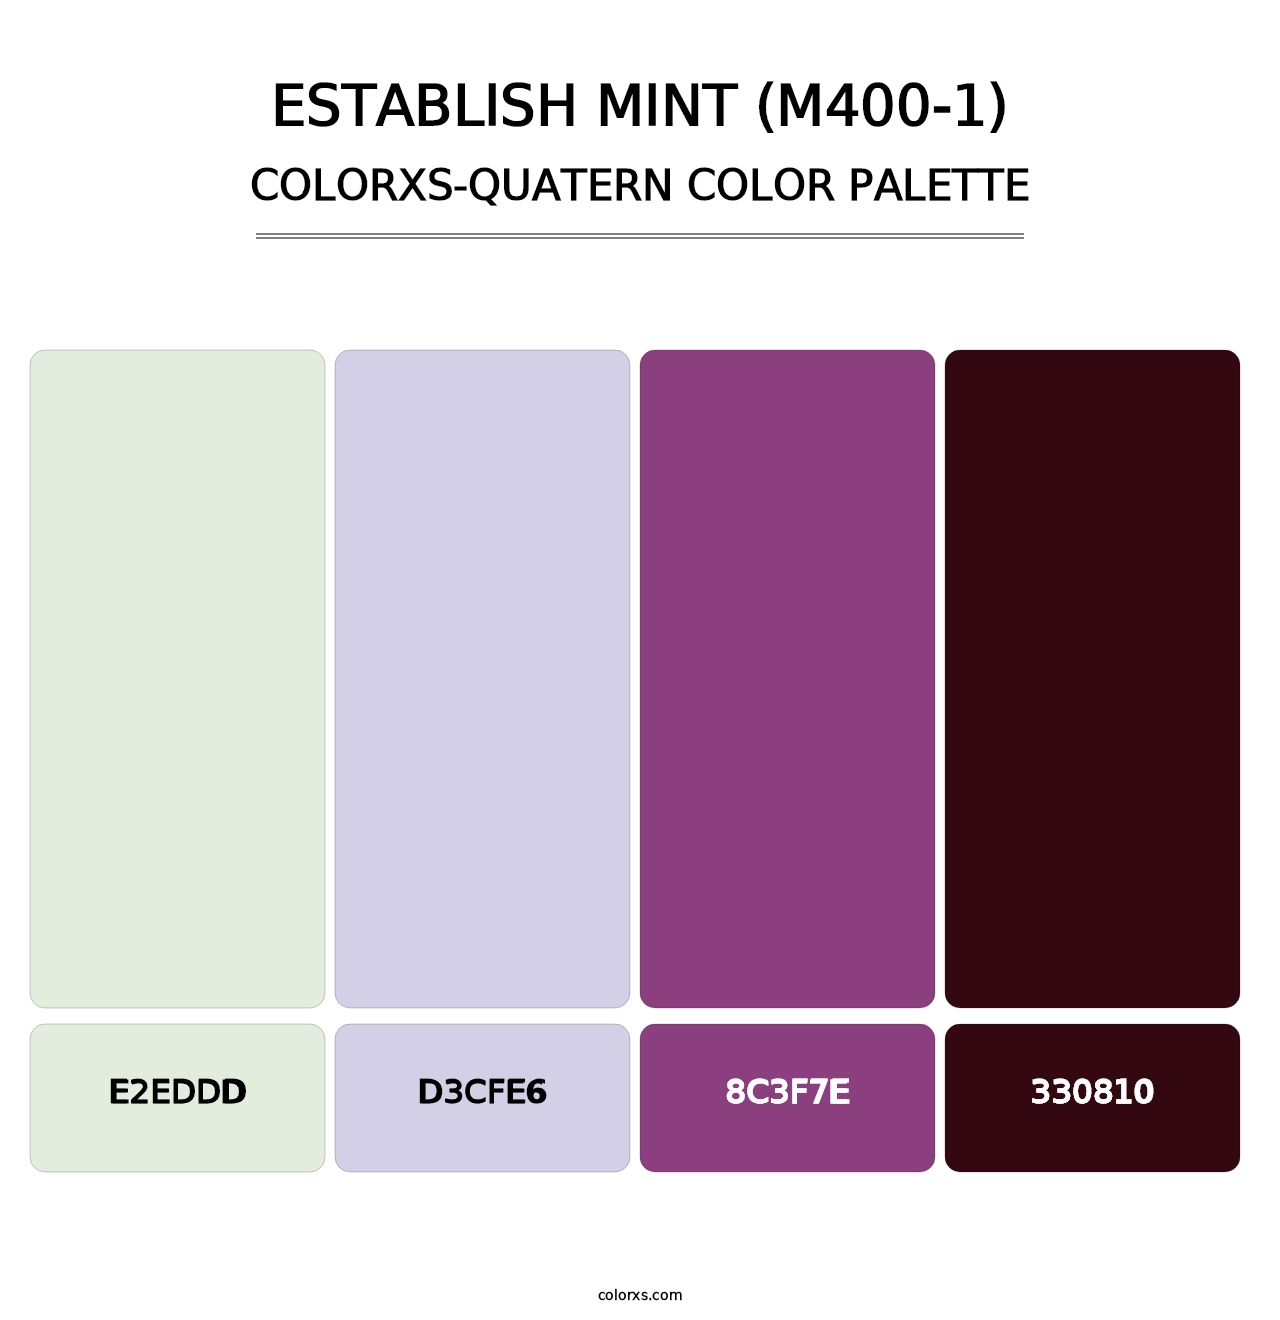 Establish Mint (M400-1) - Colorxs Quatern Palette